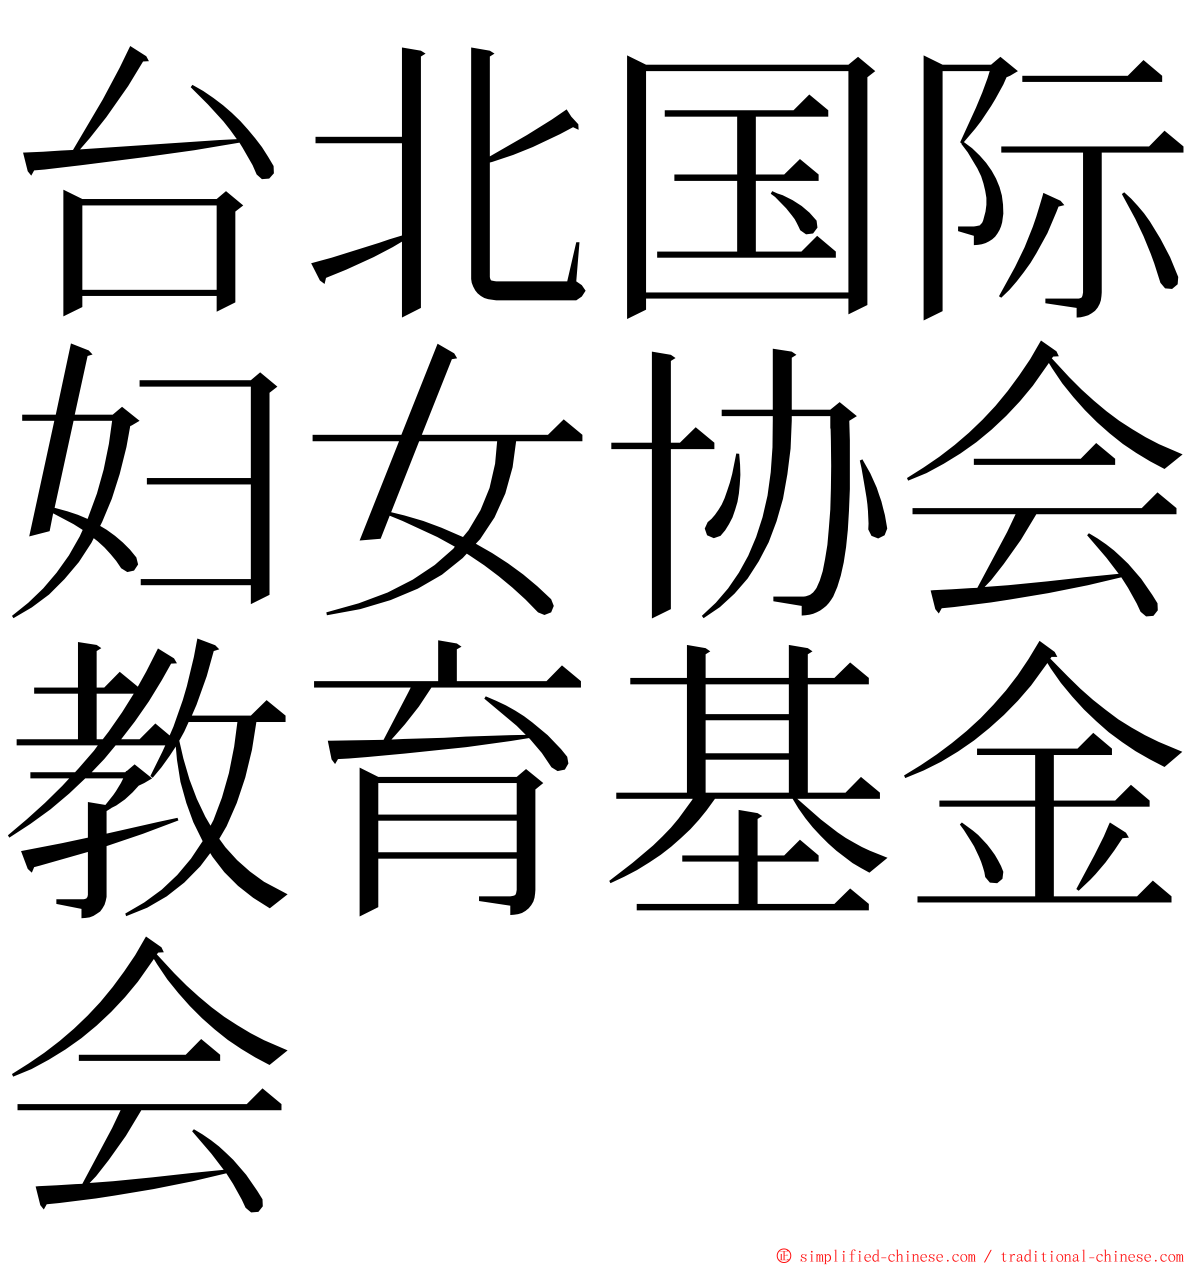 台北国际妇女协会教育基金会 ming font